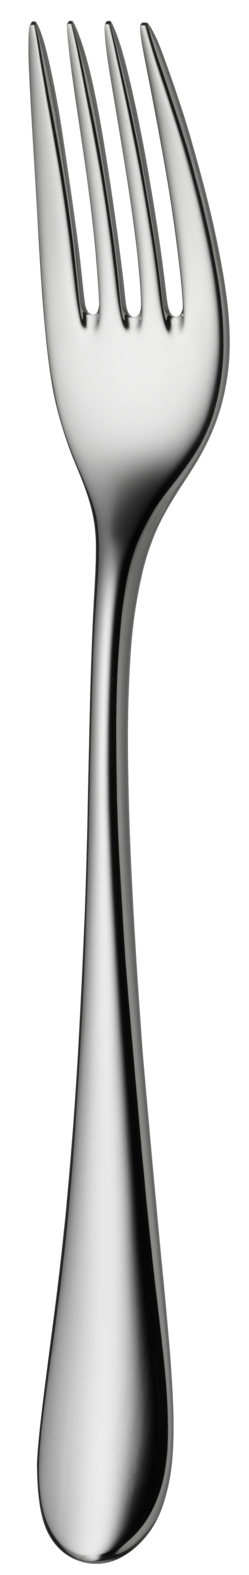 Столовая вилка вилка столовая уралочка h 19 5 см толщина 2 мм серебряный